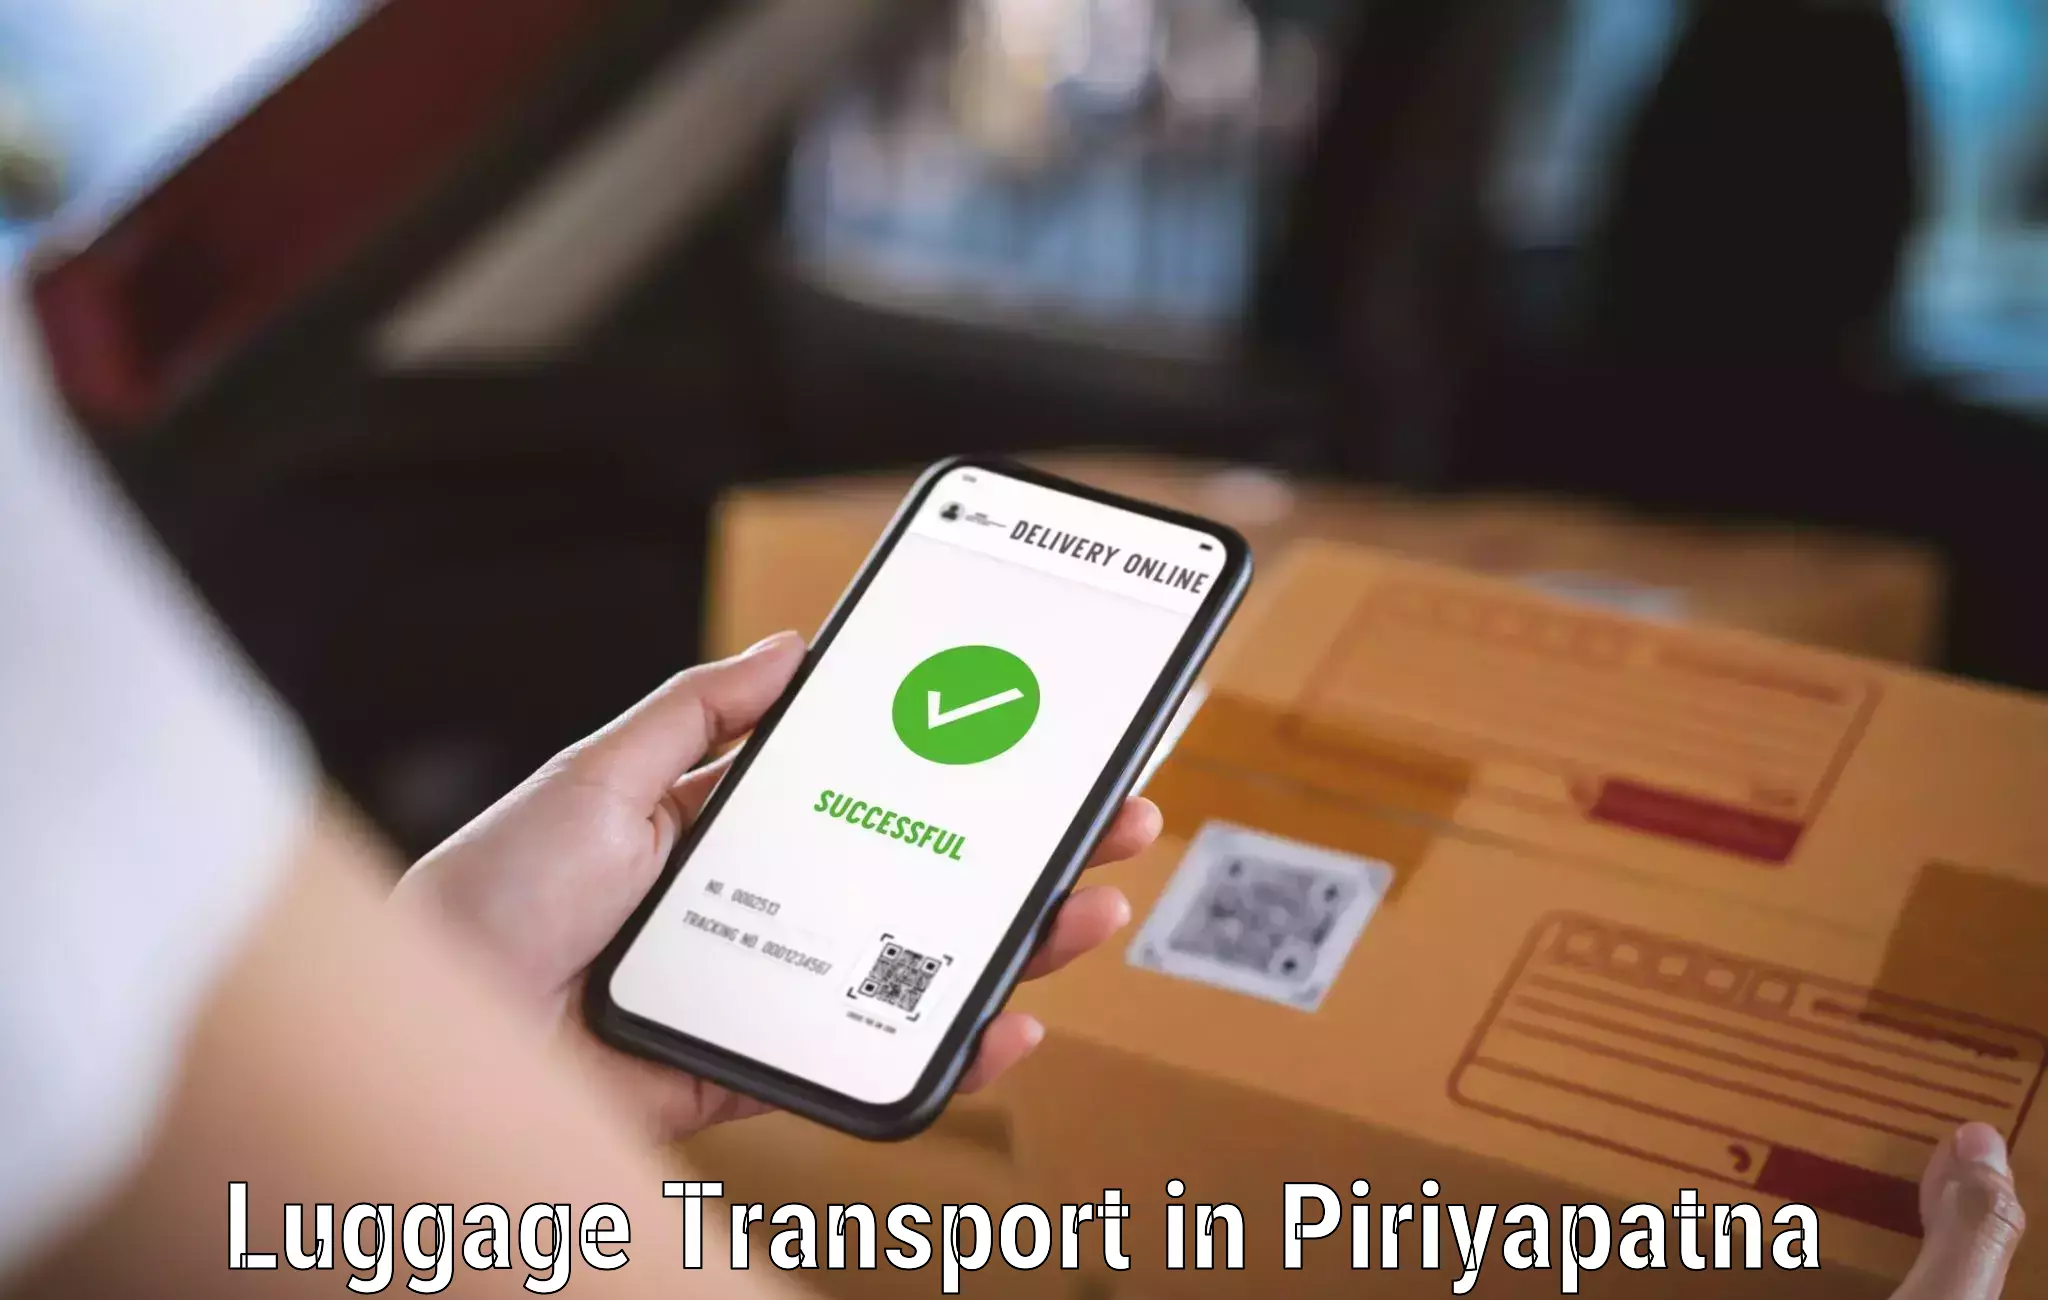 Multi-destination luggage transport in Piriyapatna